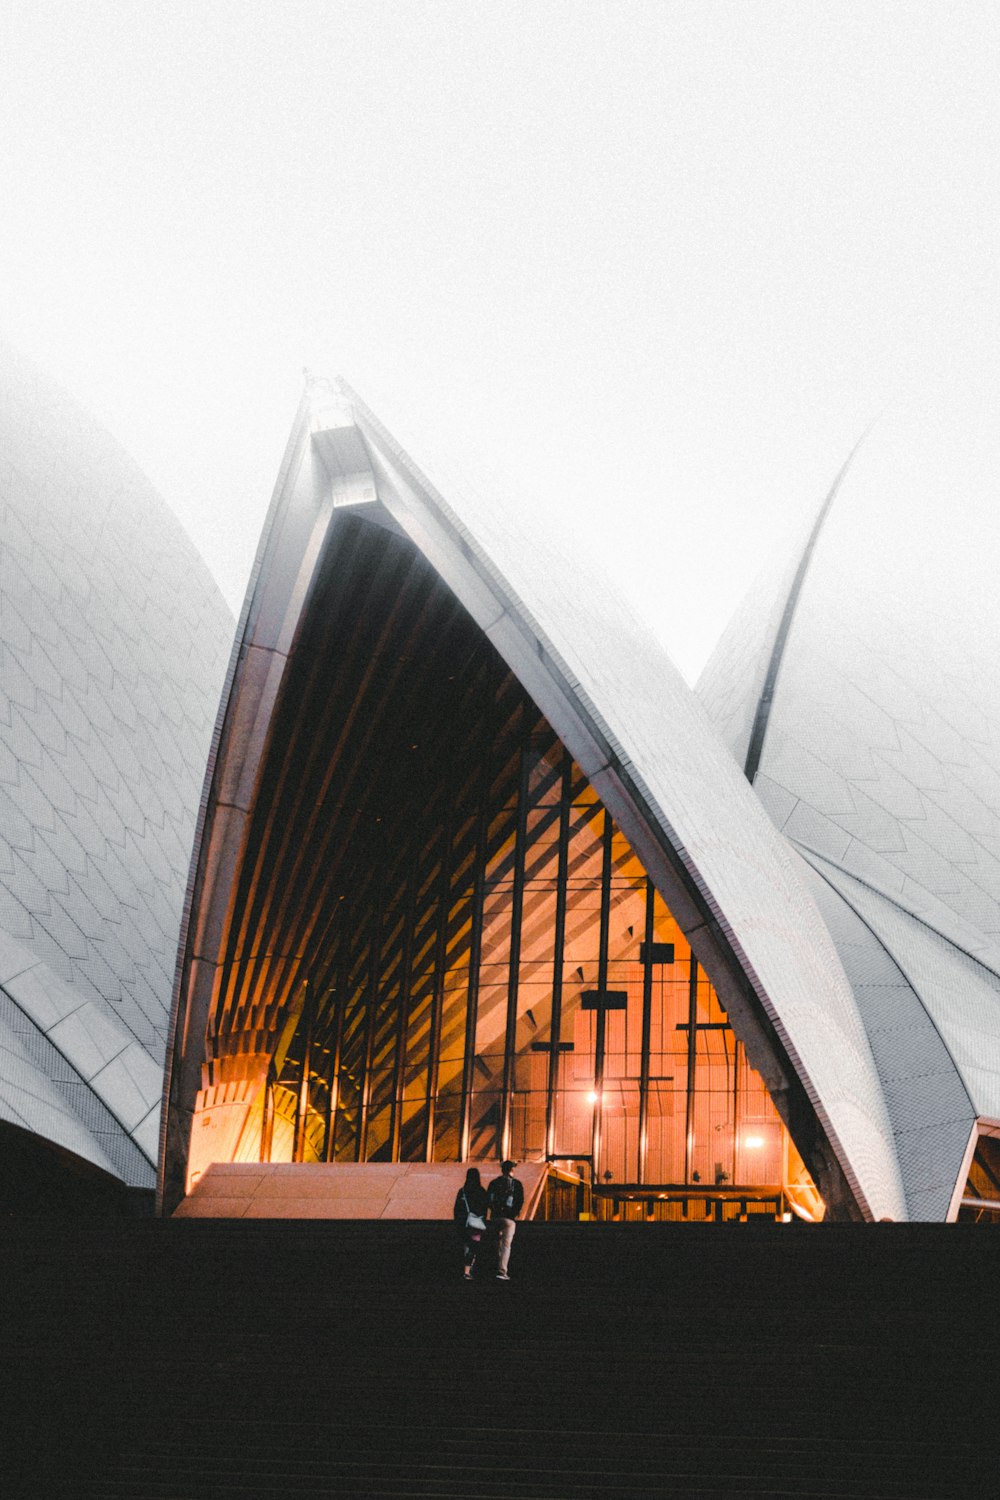 Teatro dell'Opera di Sydney, Australia